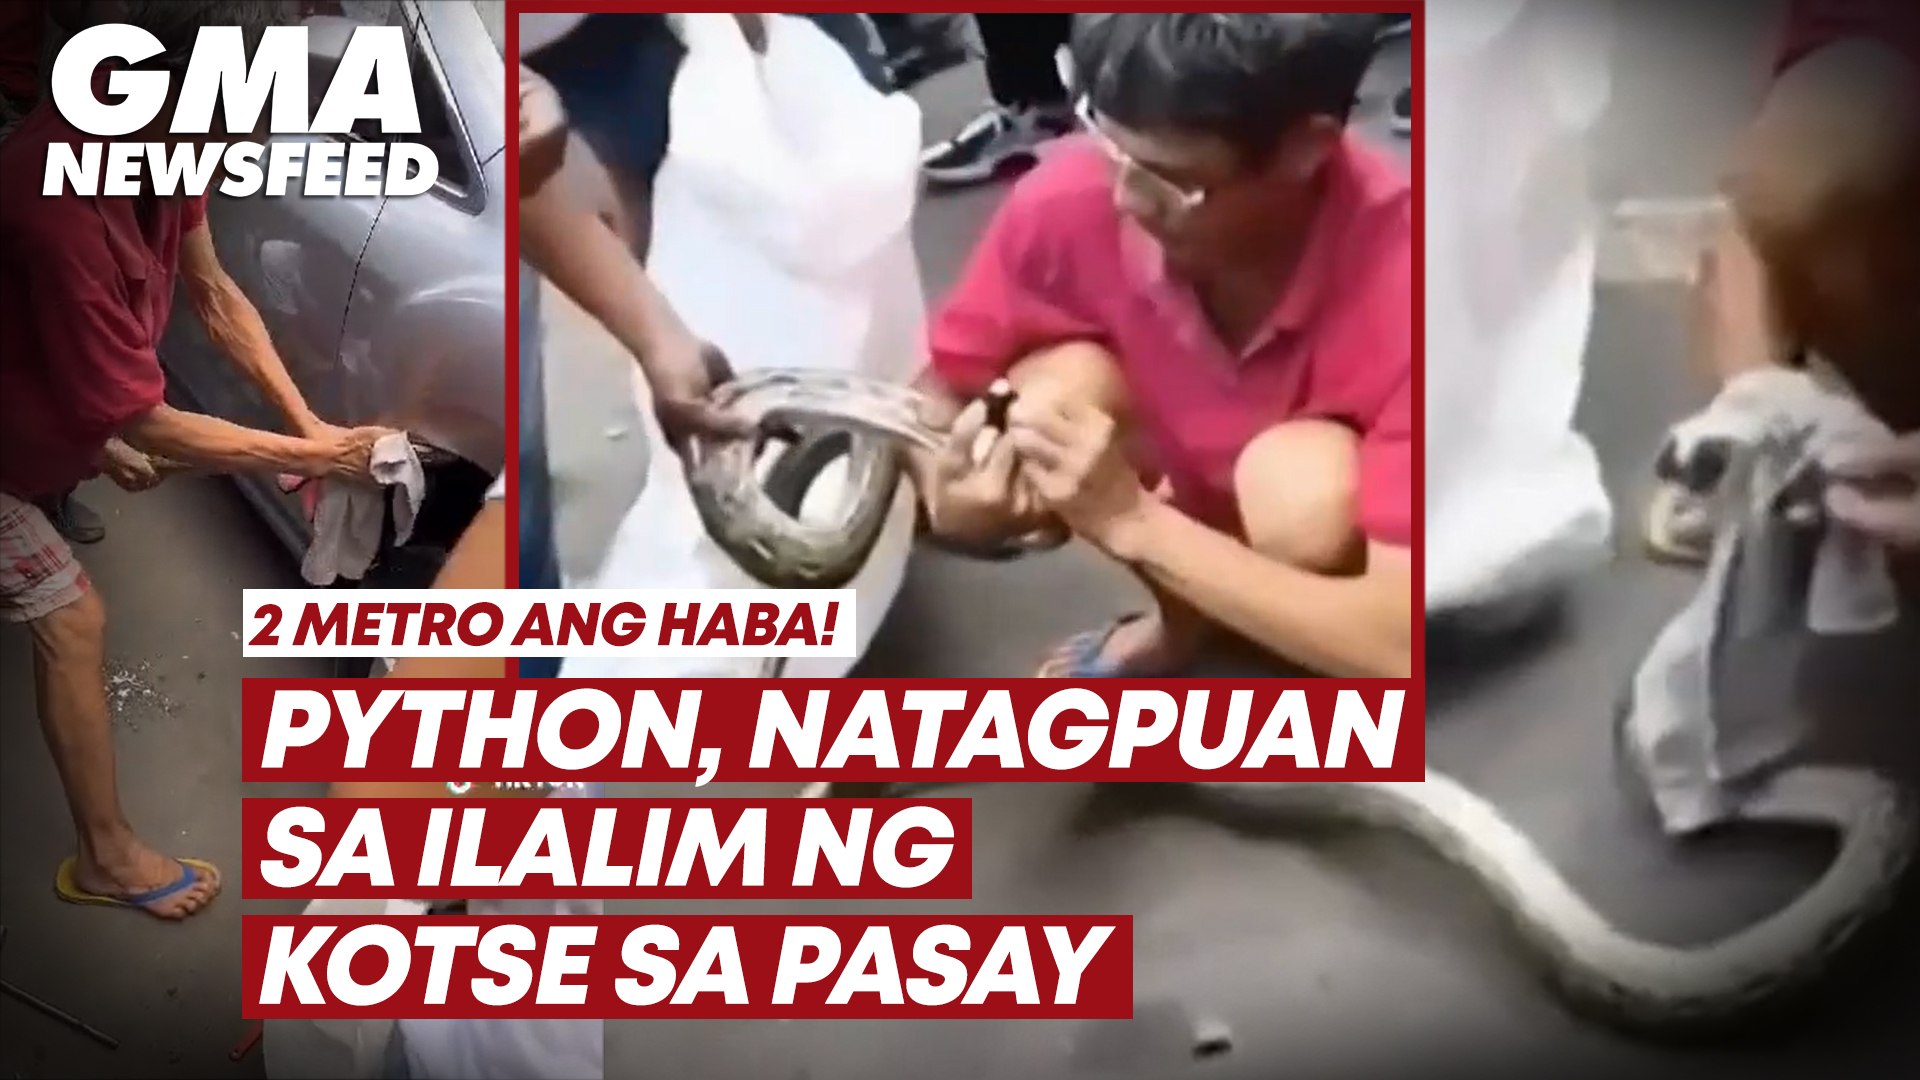 Python, natagpuan sa ilalim ng kotse sa Pasay | GMA News Feed - video  Dailymotion